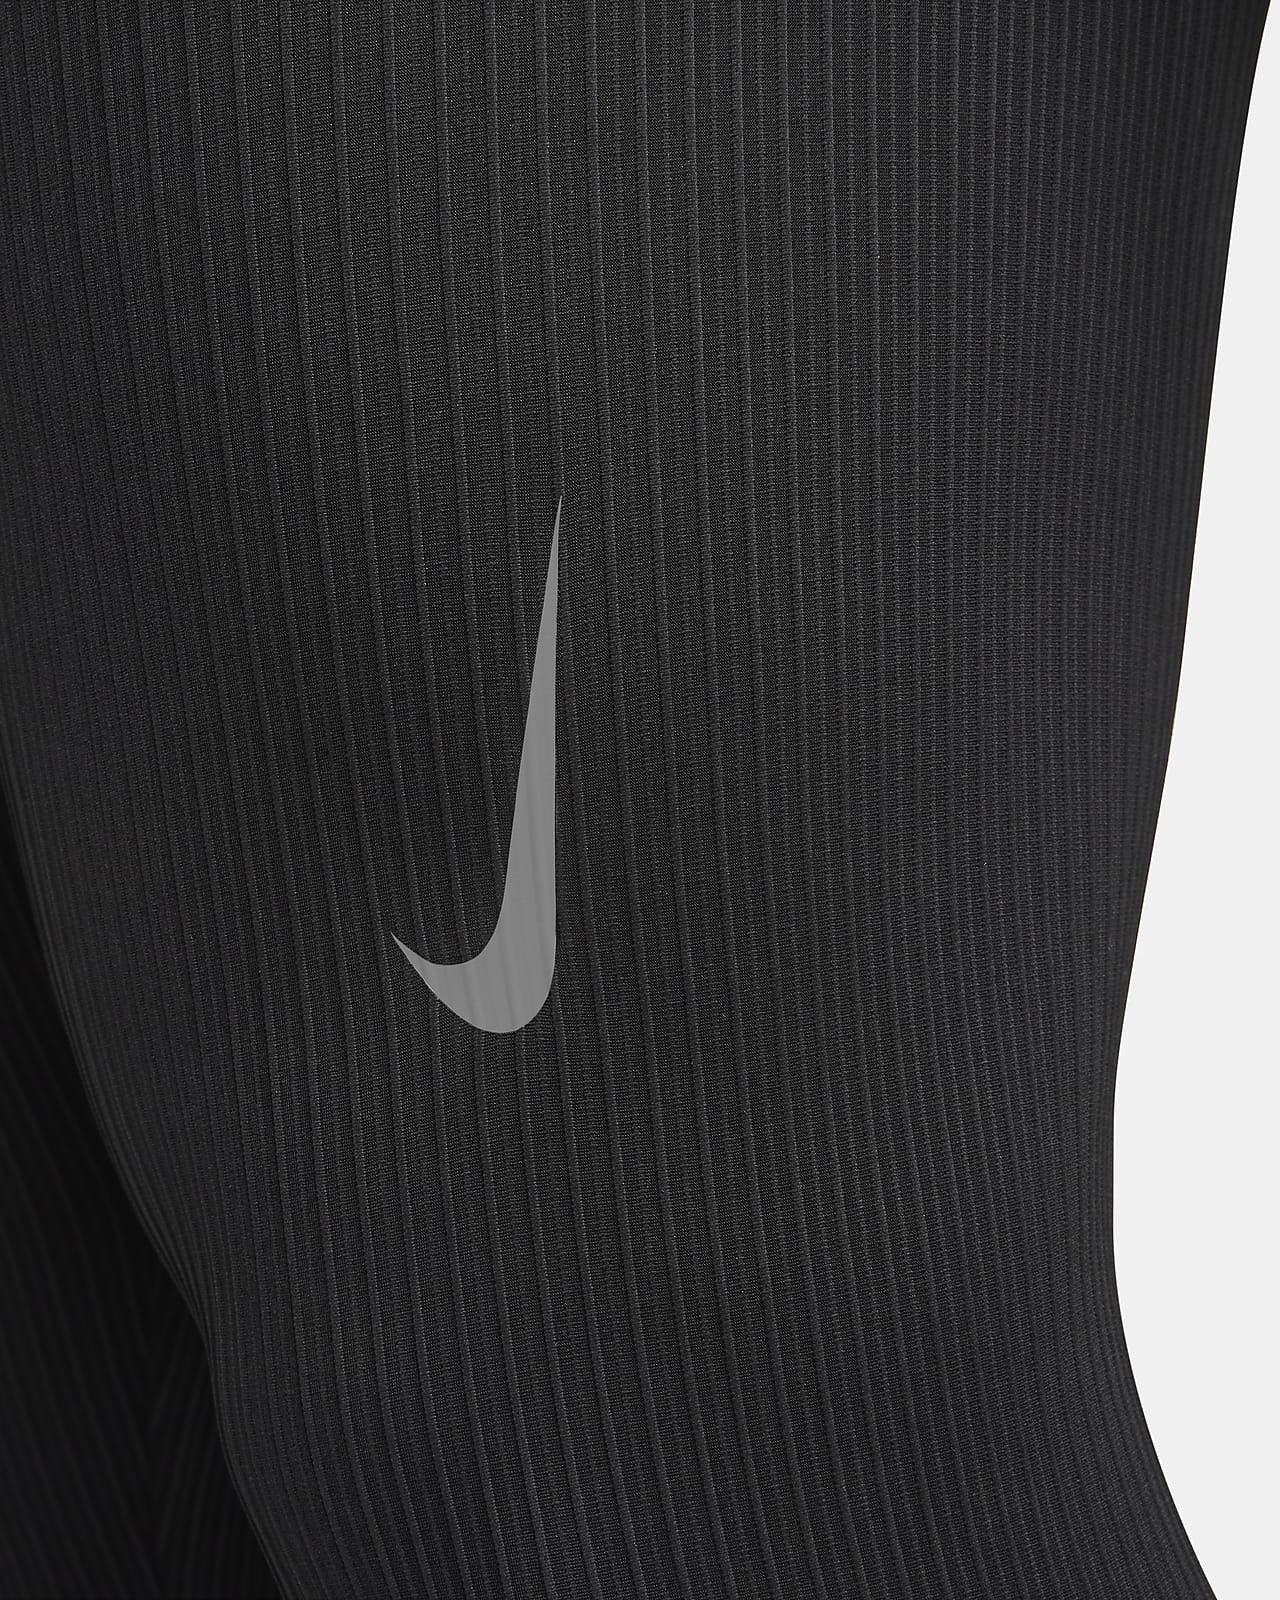 Nike AeroSwift Half Tight - Black/Black/Black/White - Mens